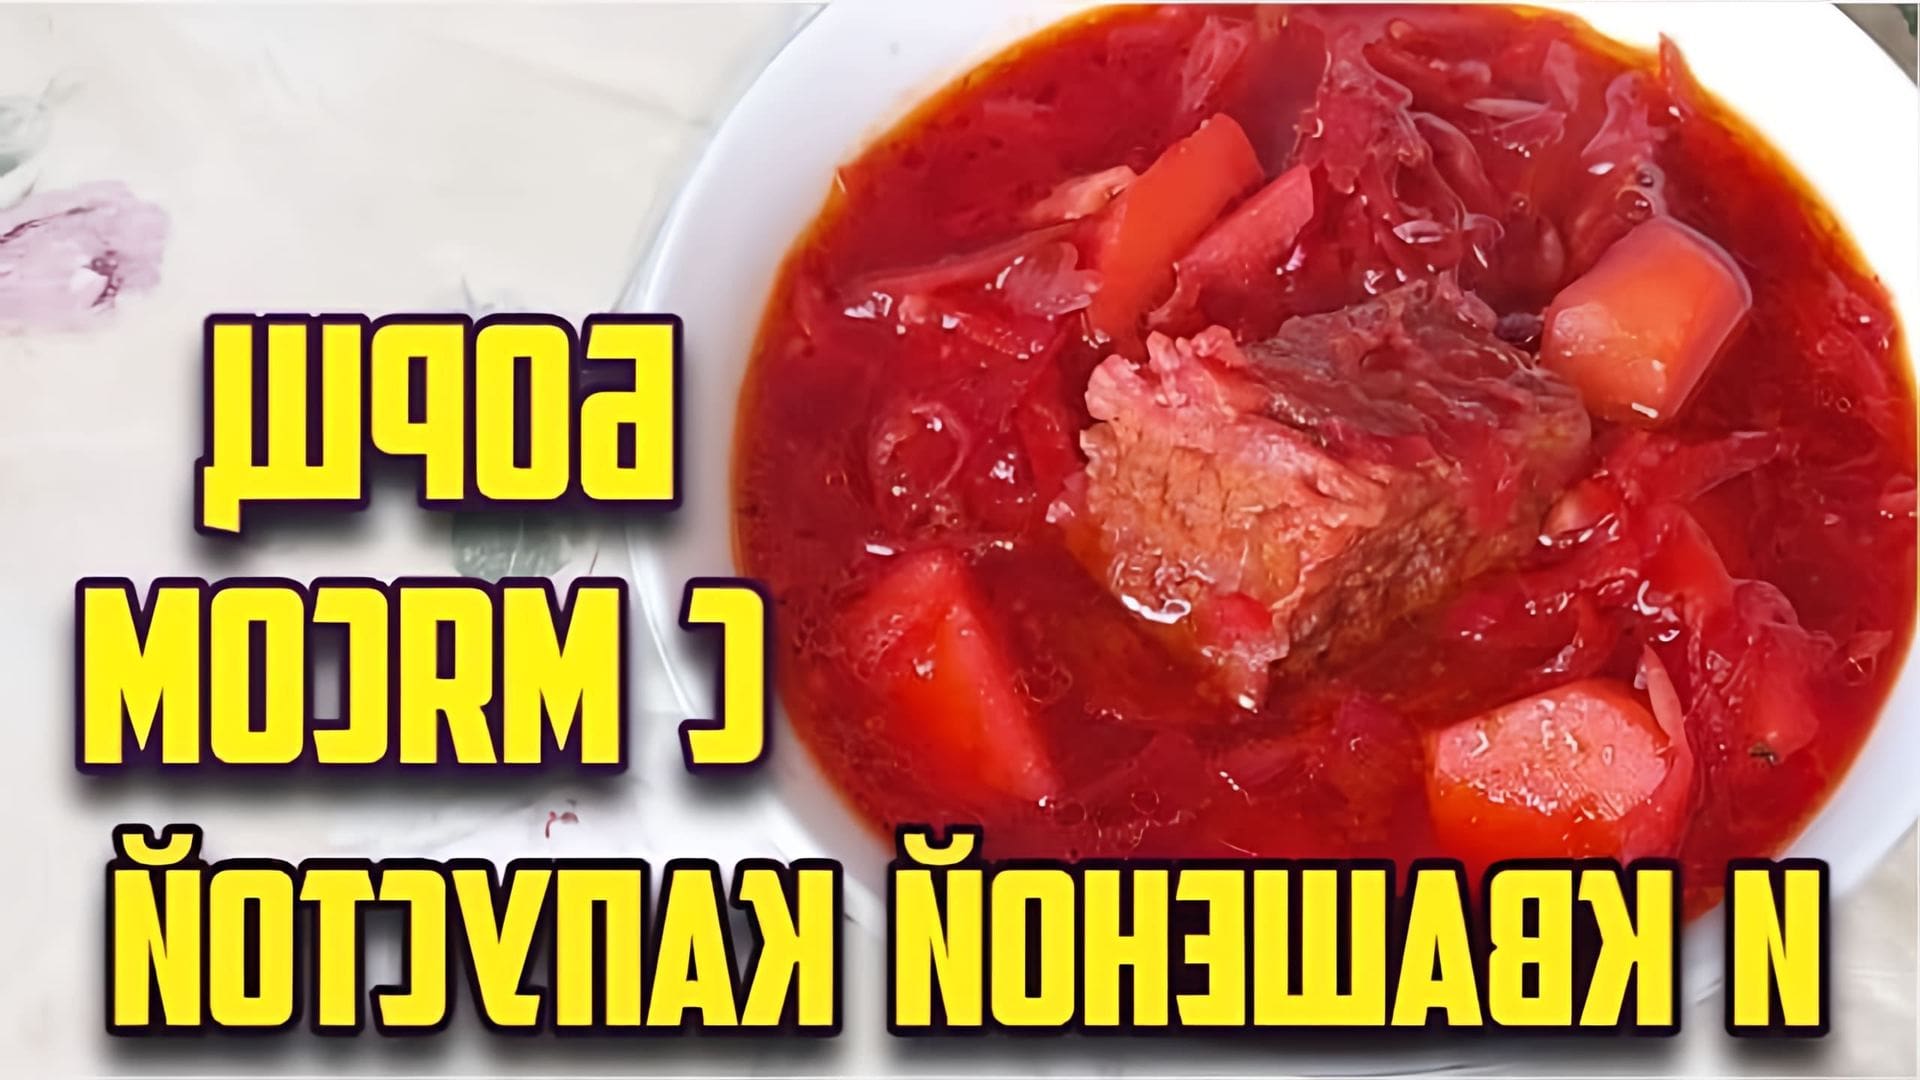 В этом видео-ролике будет представлен рецепт приготовления борща с квашеной капустой и мясом